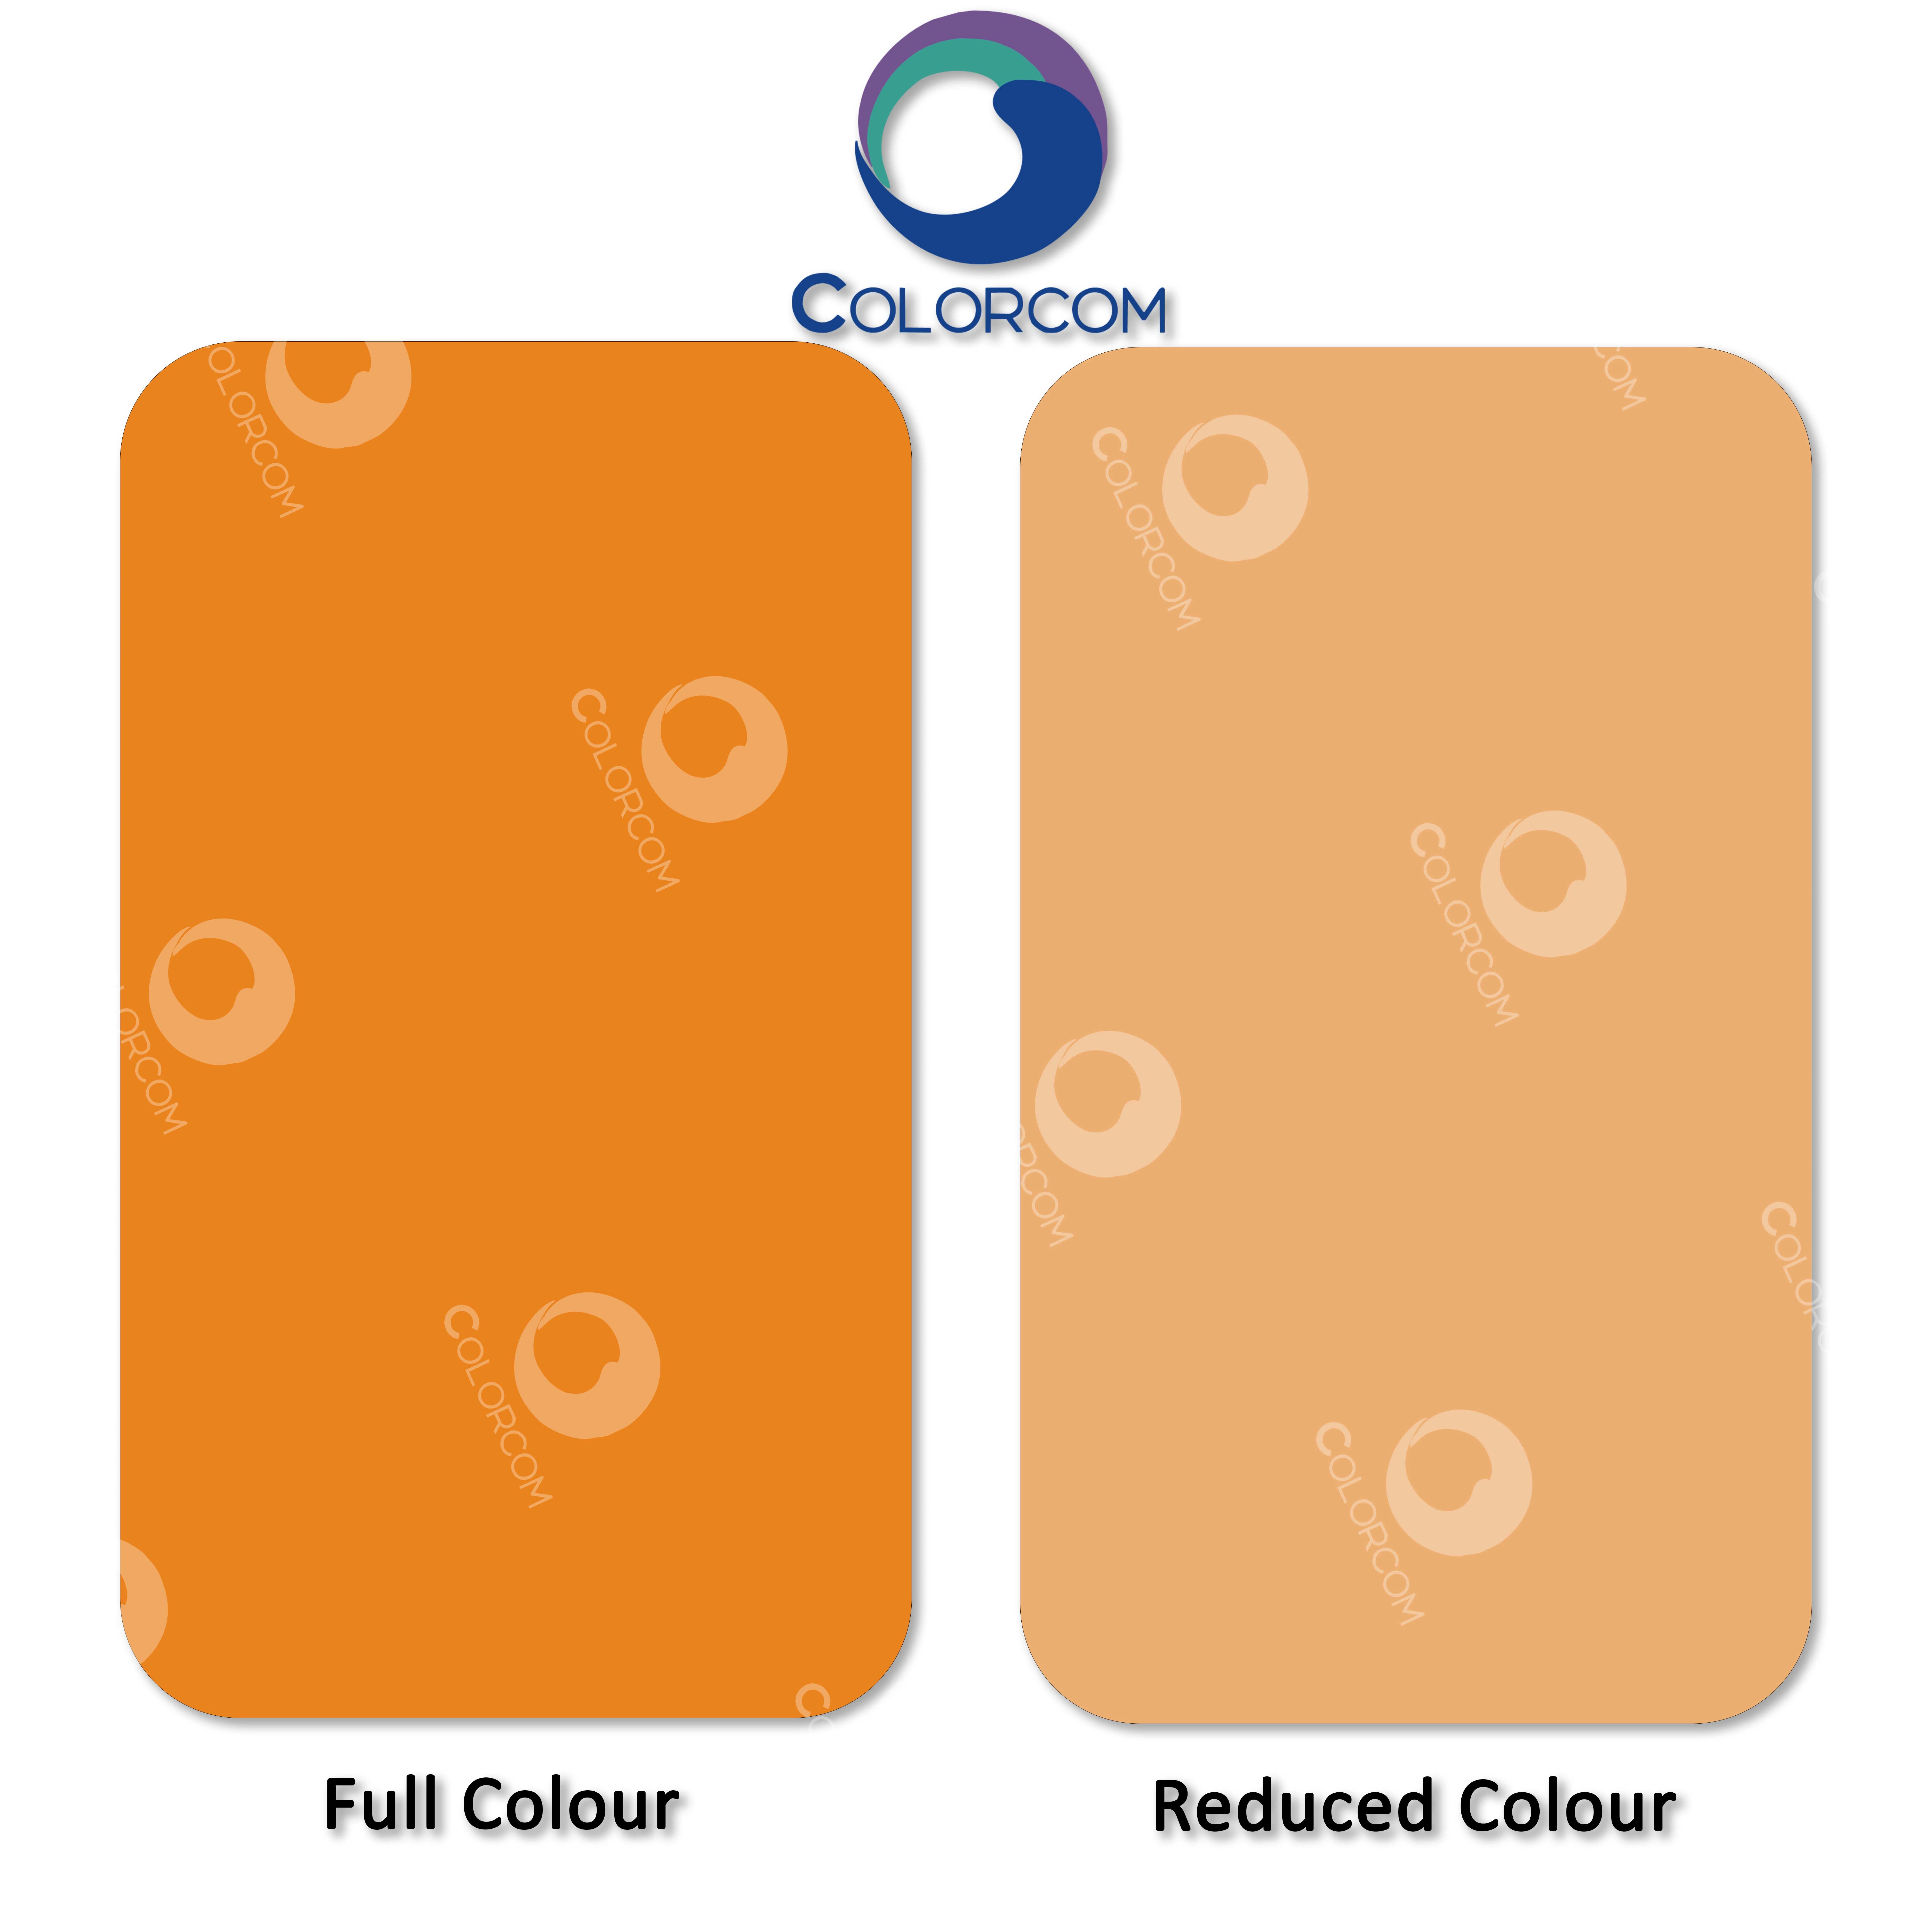 Le Pigment Yellow 139 pour les matières plastiques et de revêtement poudre jaune de pigments organiques